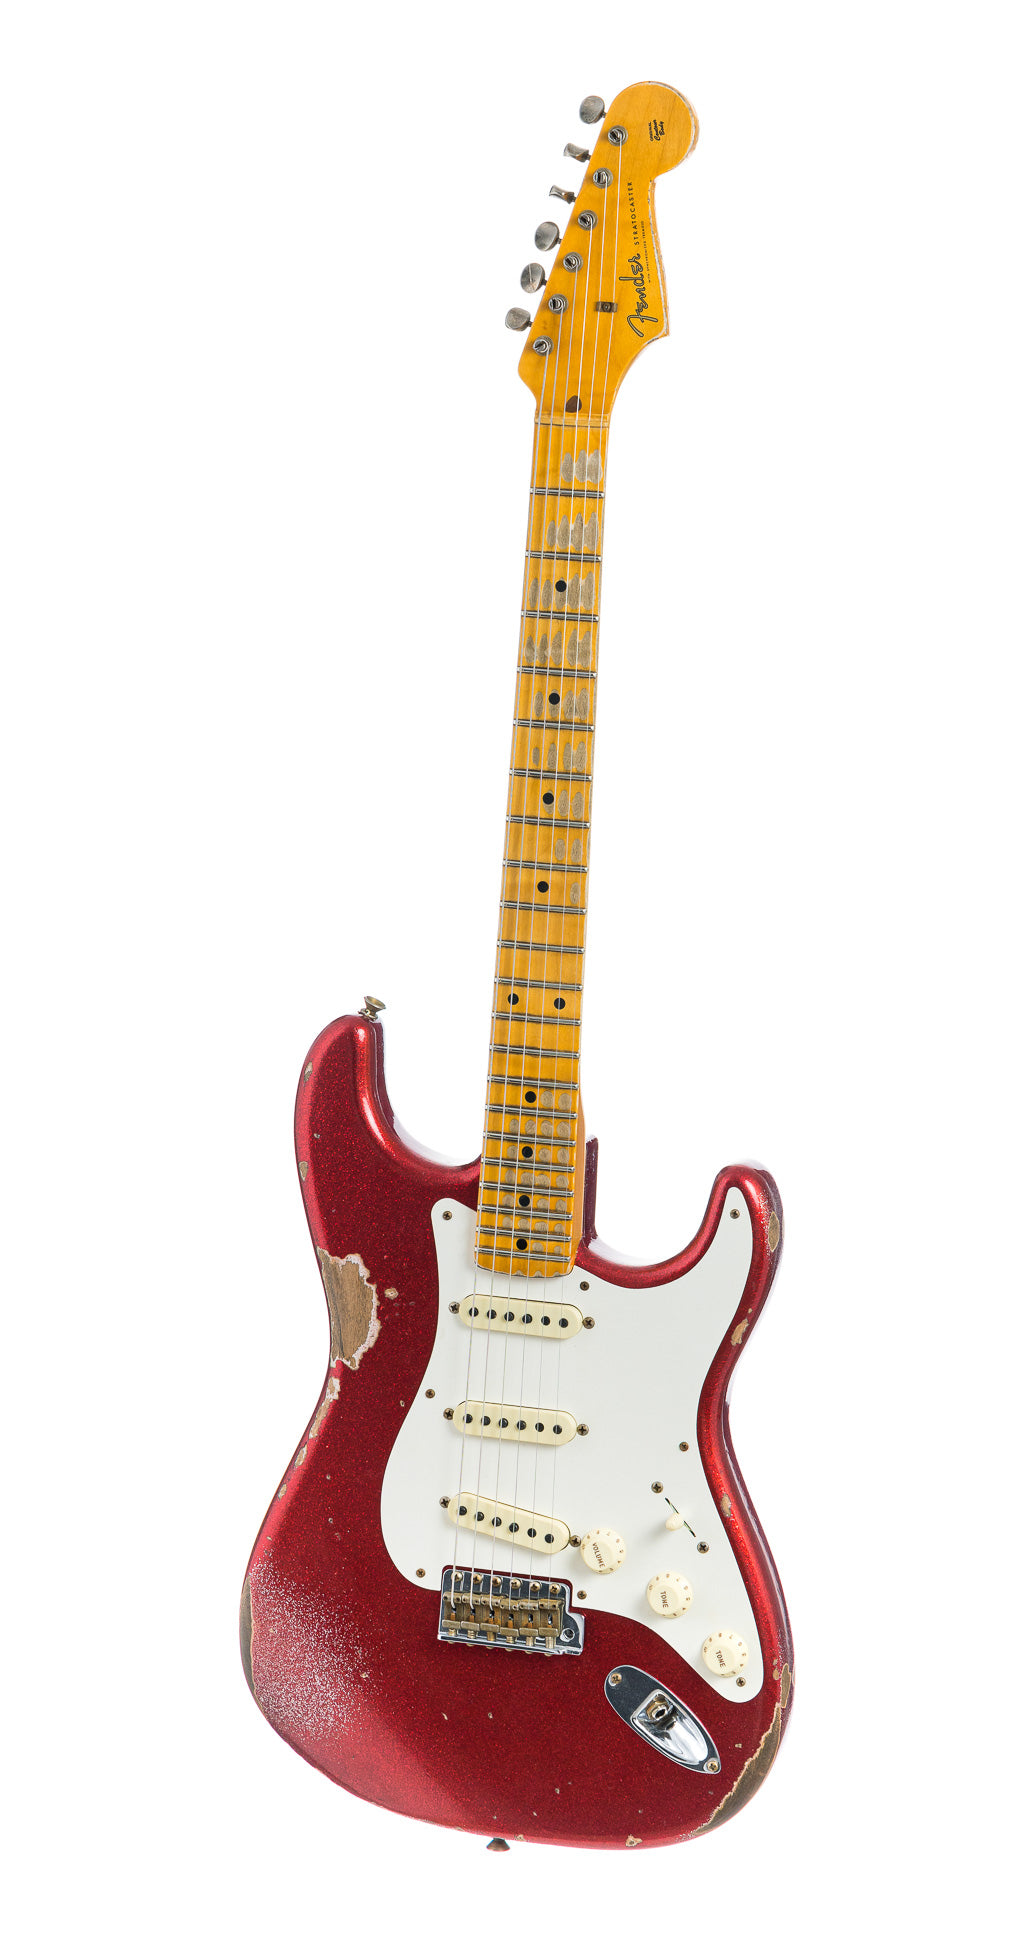 Fender Custom Shop 1957 Stratocaster Heavy Relic, Lark Guitars Custom Run -  Red Sparkle (552)